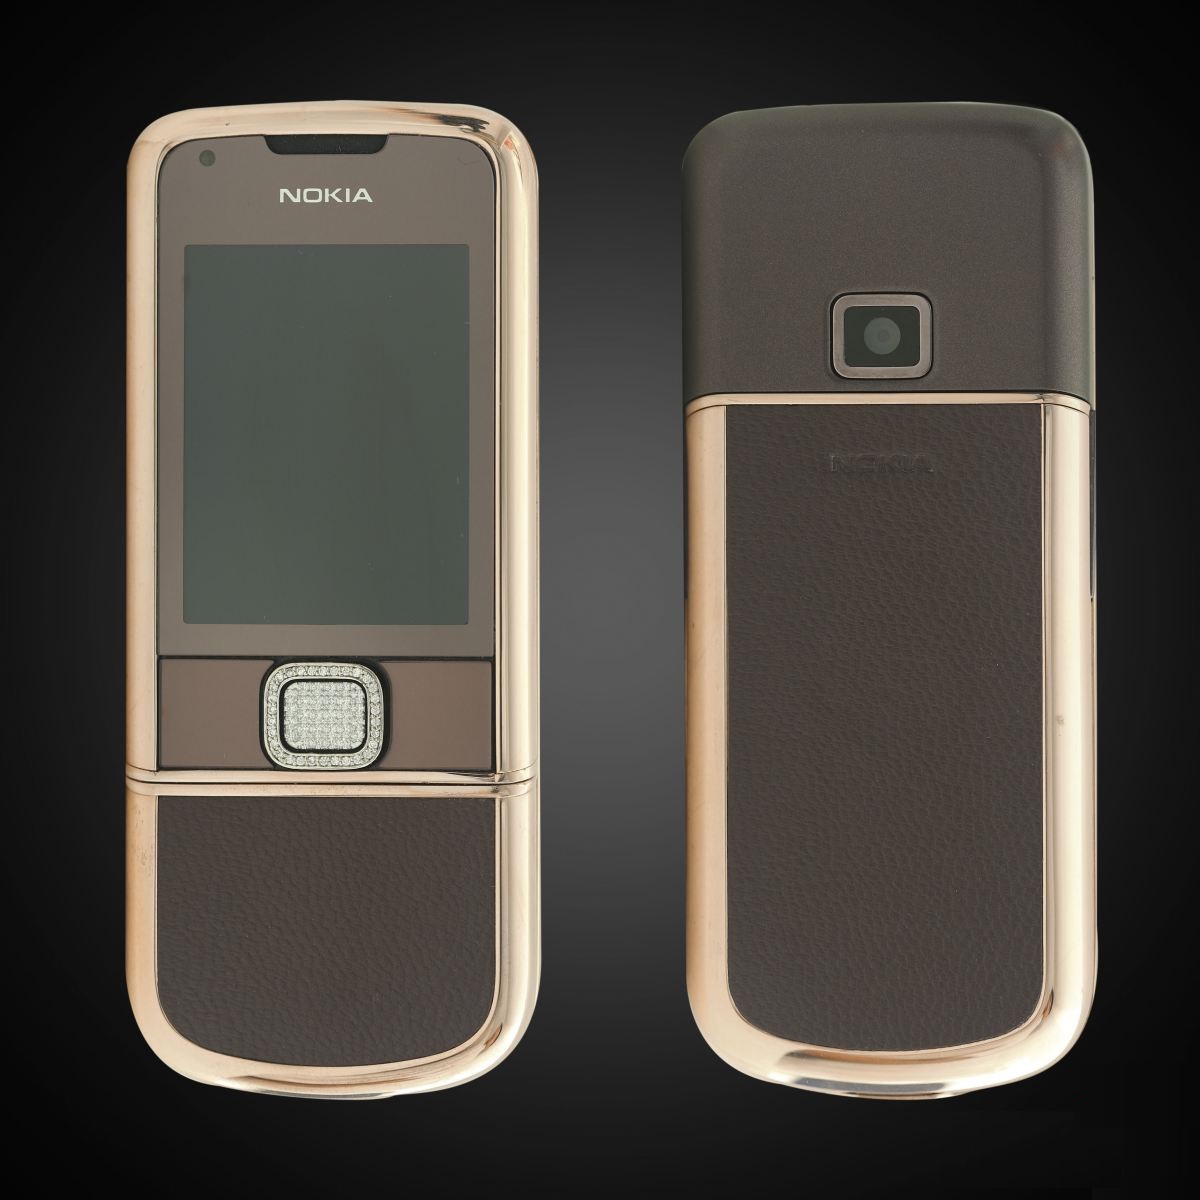 Hình nền Điện thoại Nokia 8800 với đầy đủ các tiện ích và tính năng hấp dẫn đang chờ bạn khám phá. Nếu bạn là một fan của Nokia, hãy cùng đón nhận những hình ảnh đầy ấn tượng này và sử dụng làm hình nền cho điện thoại của mình để thể hiện niềm tự hào với thương hiệu này nhé.